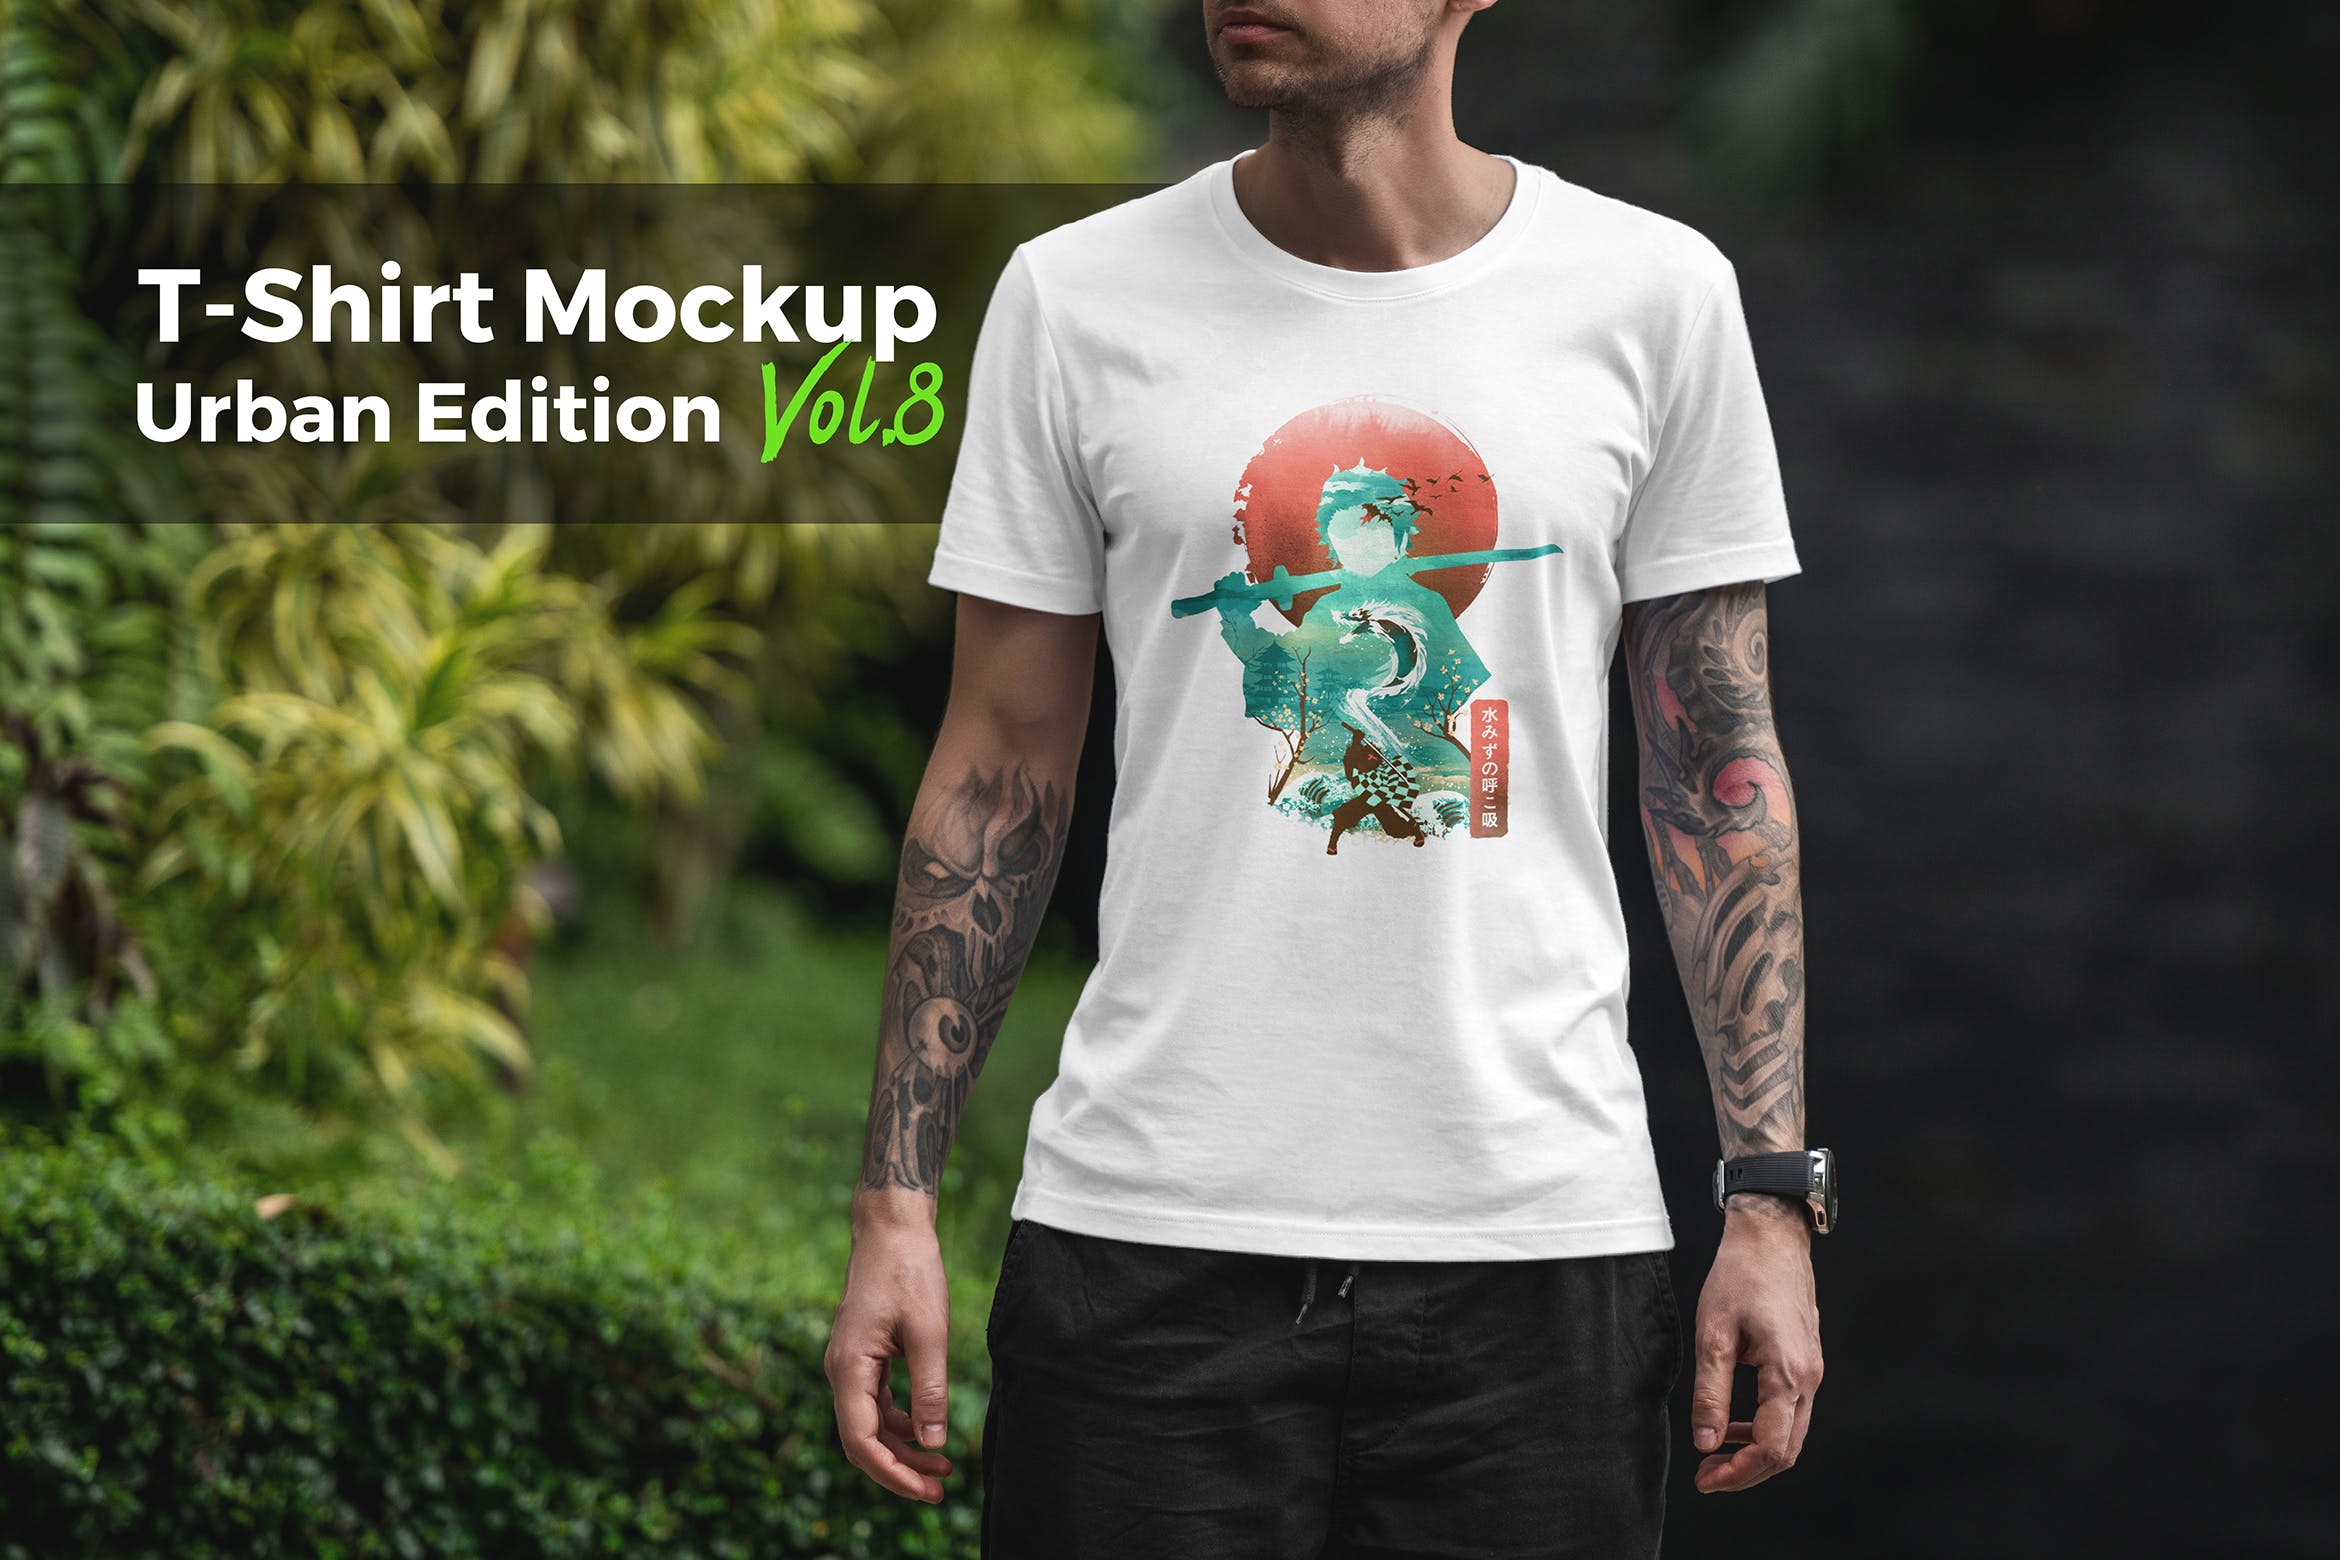 城市系列-印花T恤产品展示样机大洋岛精选模板v8 T-Shirt Mockup Urban Edition Vol. 8插图